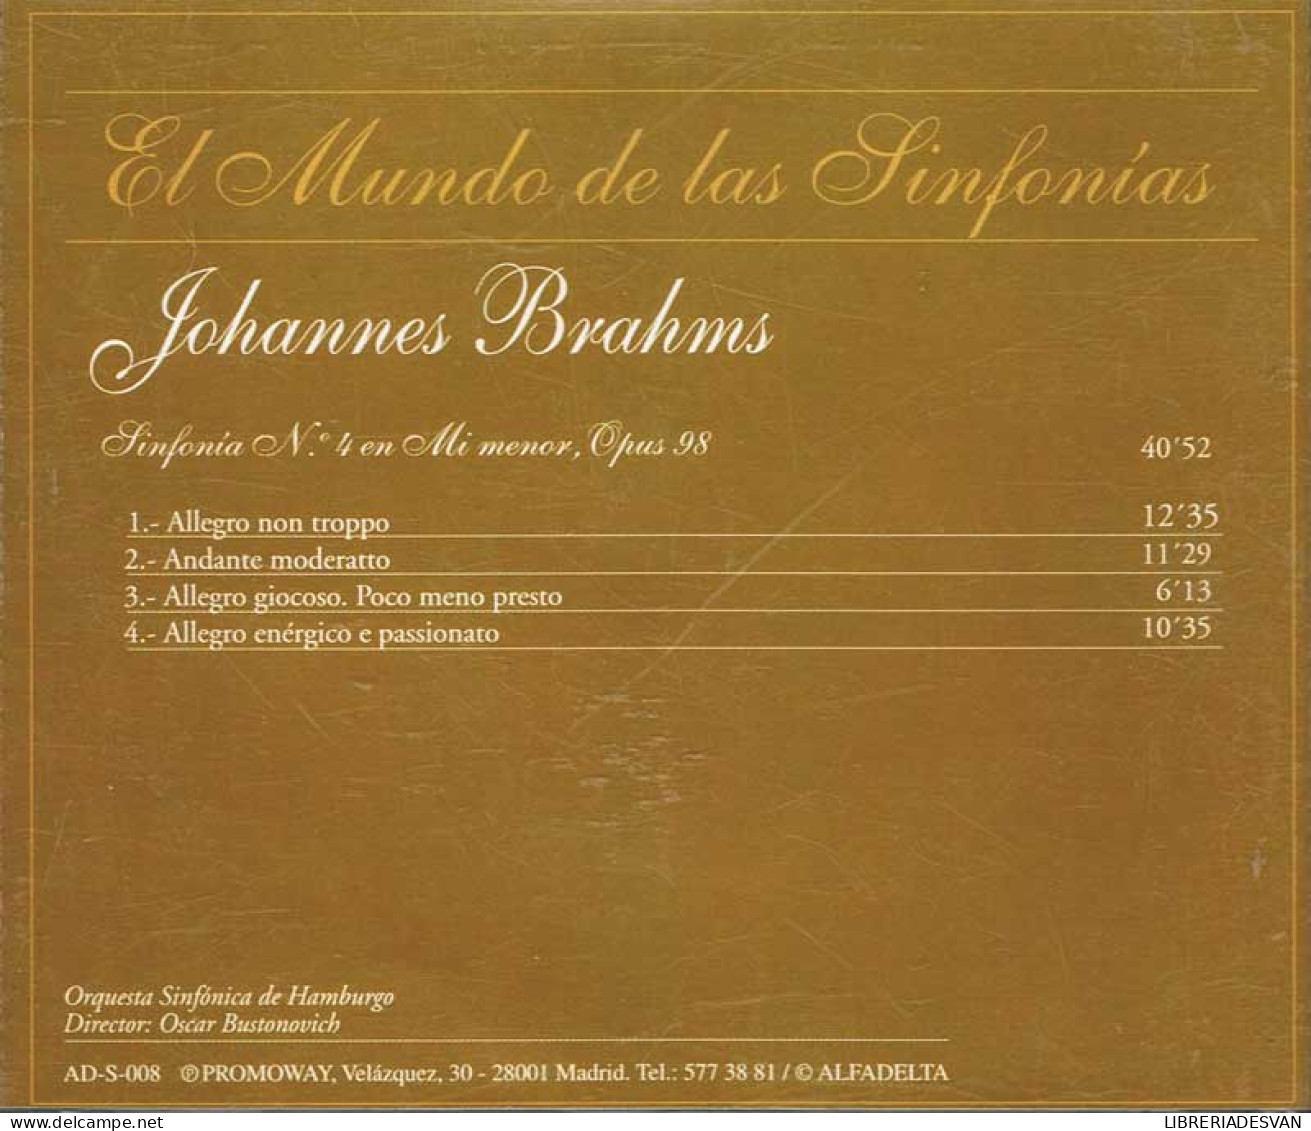 Johannes Brahms - Sinfonía Nº 4 En Mi Menor, Opus 98. CD - Klassik